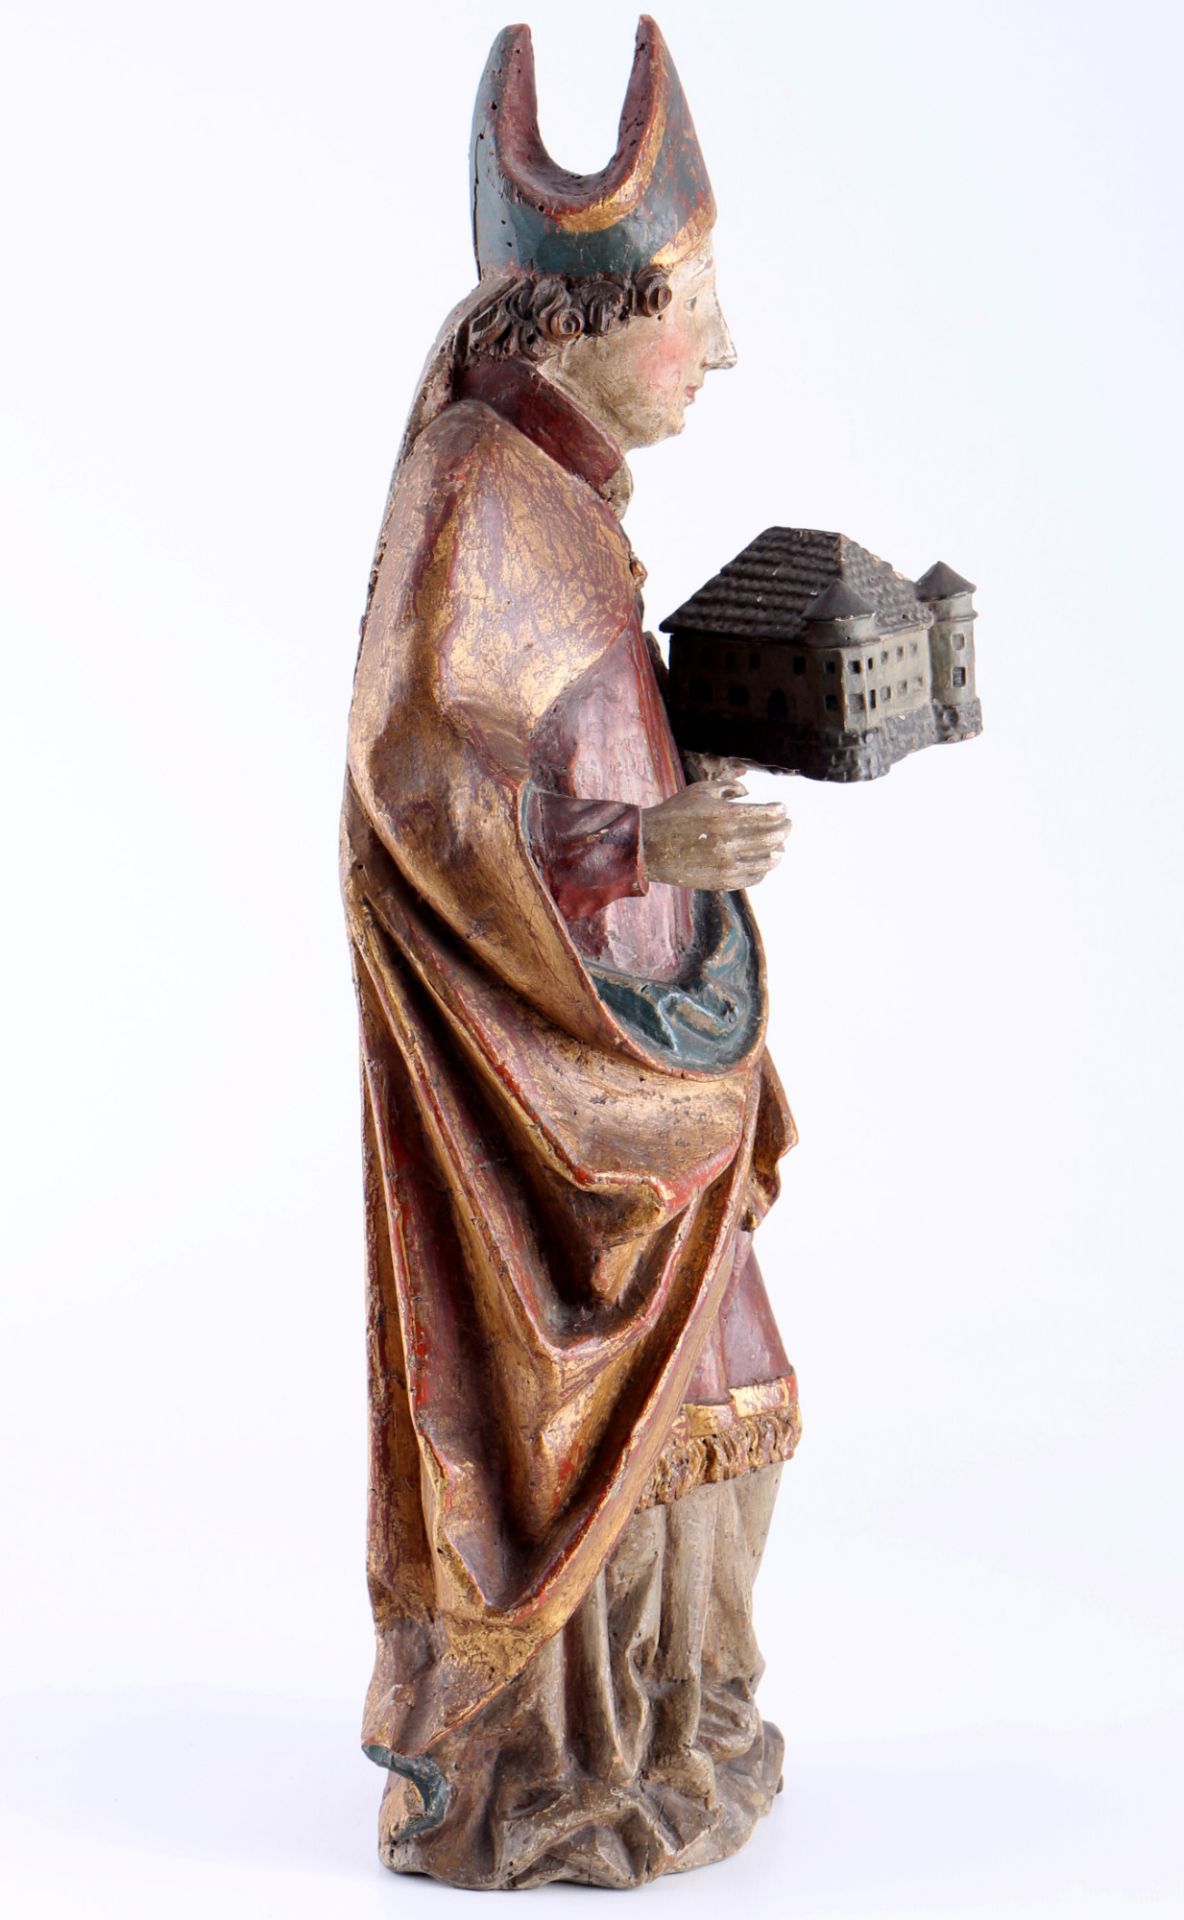 Renaissance 16./17. Jahrhundert Heiligenfigur Bischof, 16th/17th century figure of a saint bishop, - Bild 3 aus 4